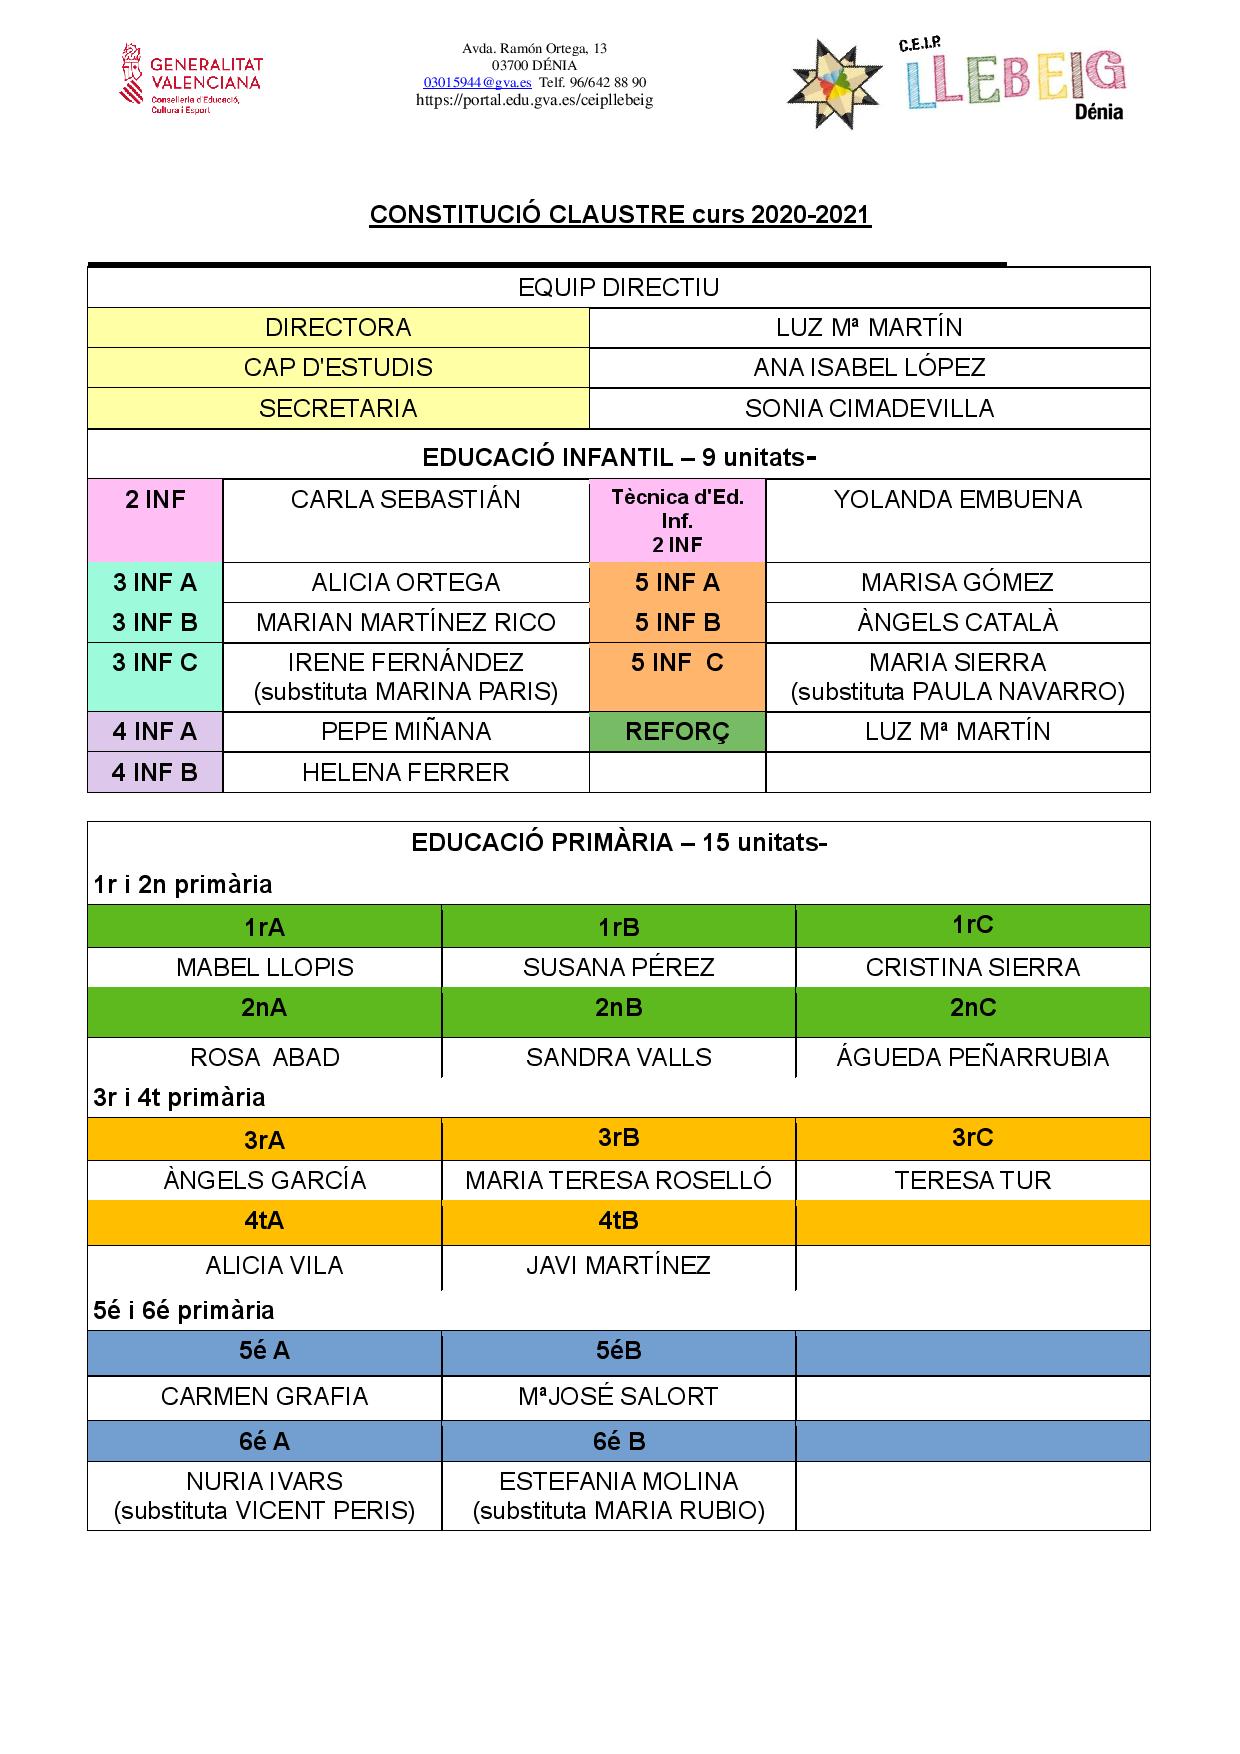 CONSTITUCIÓ CLAUSTRE curs 2020-2021-page-001